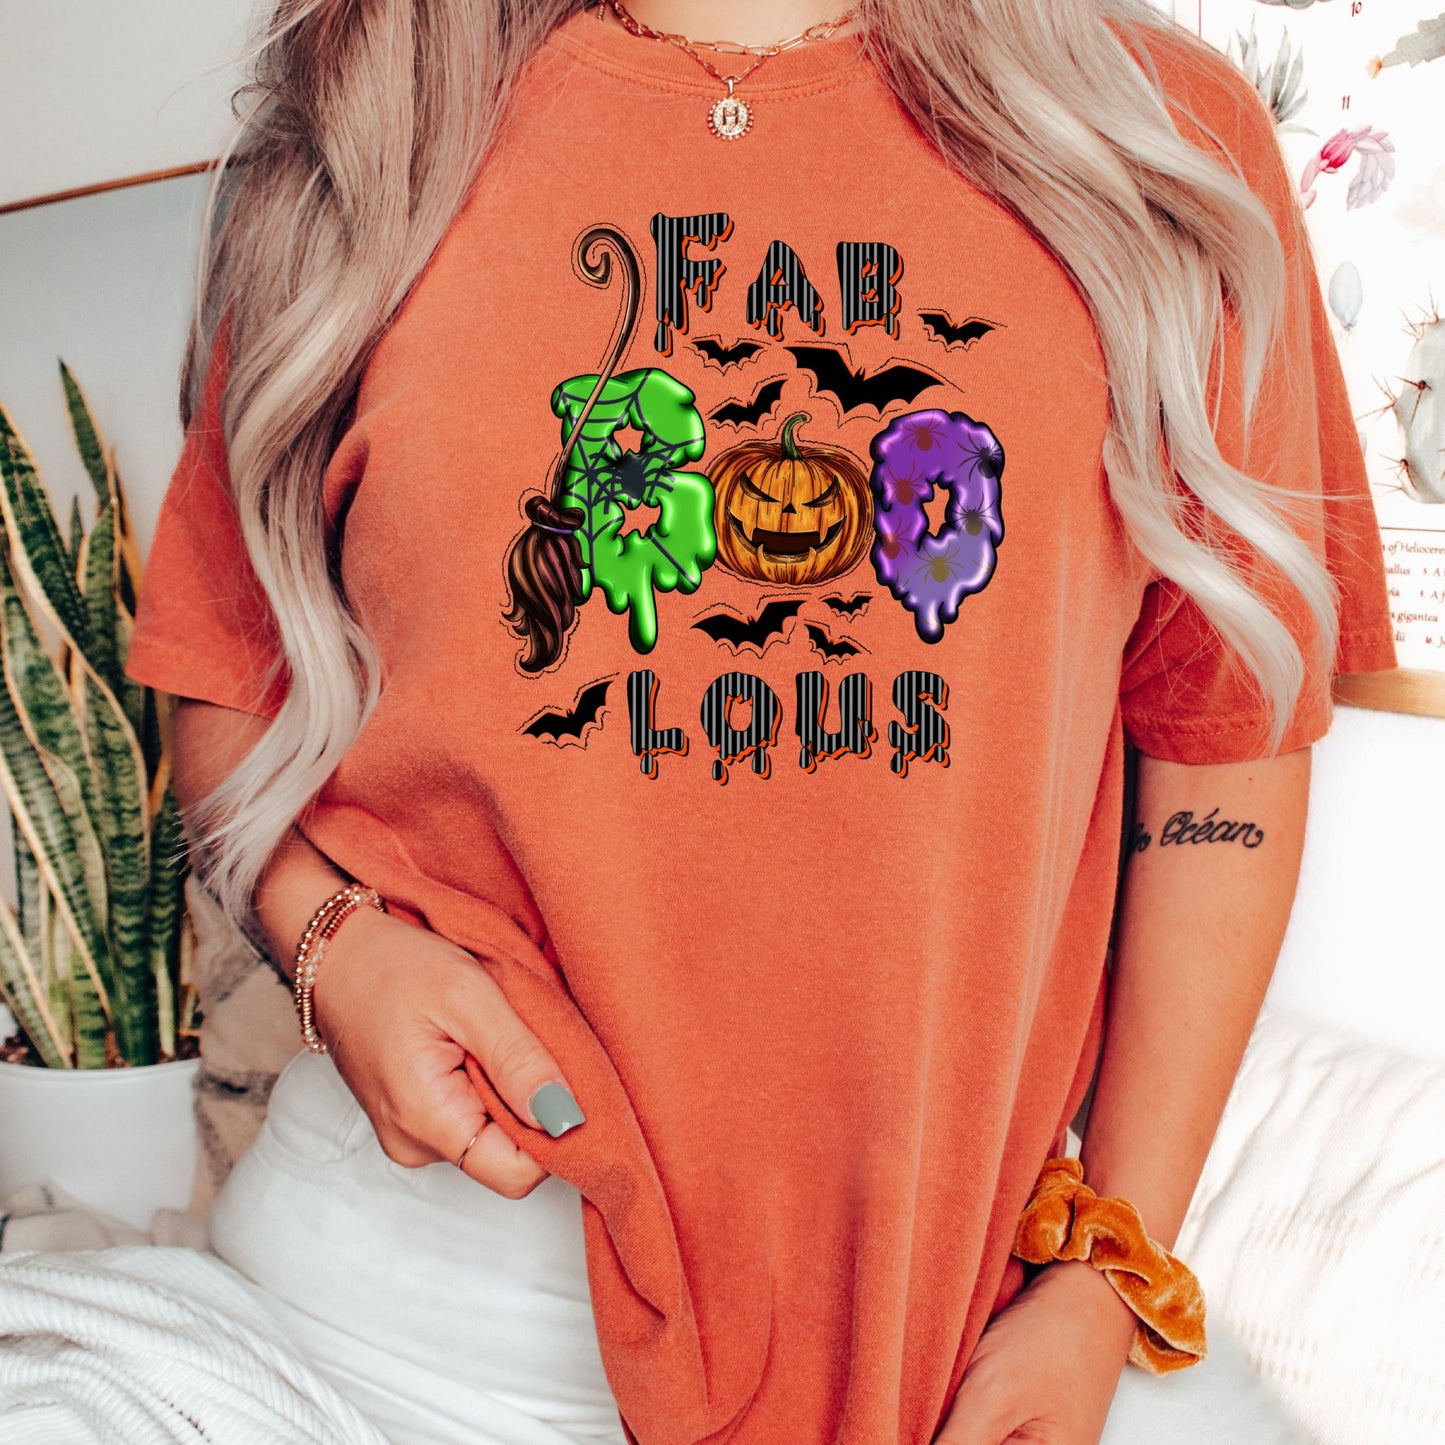 Women's Fab Boo Lous Halloween T-Shirt